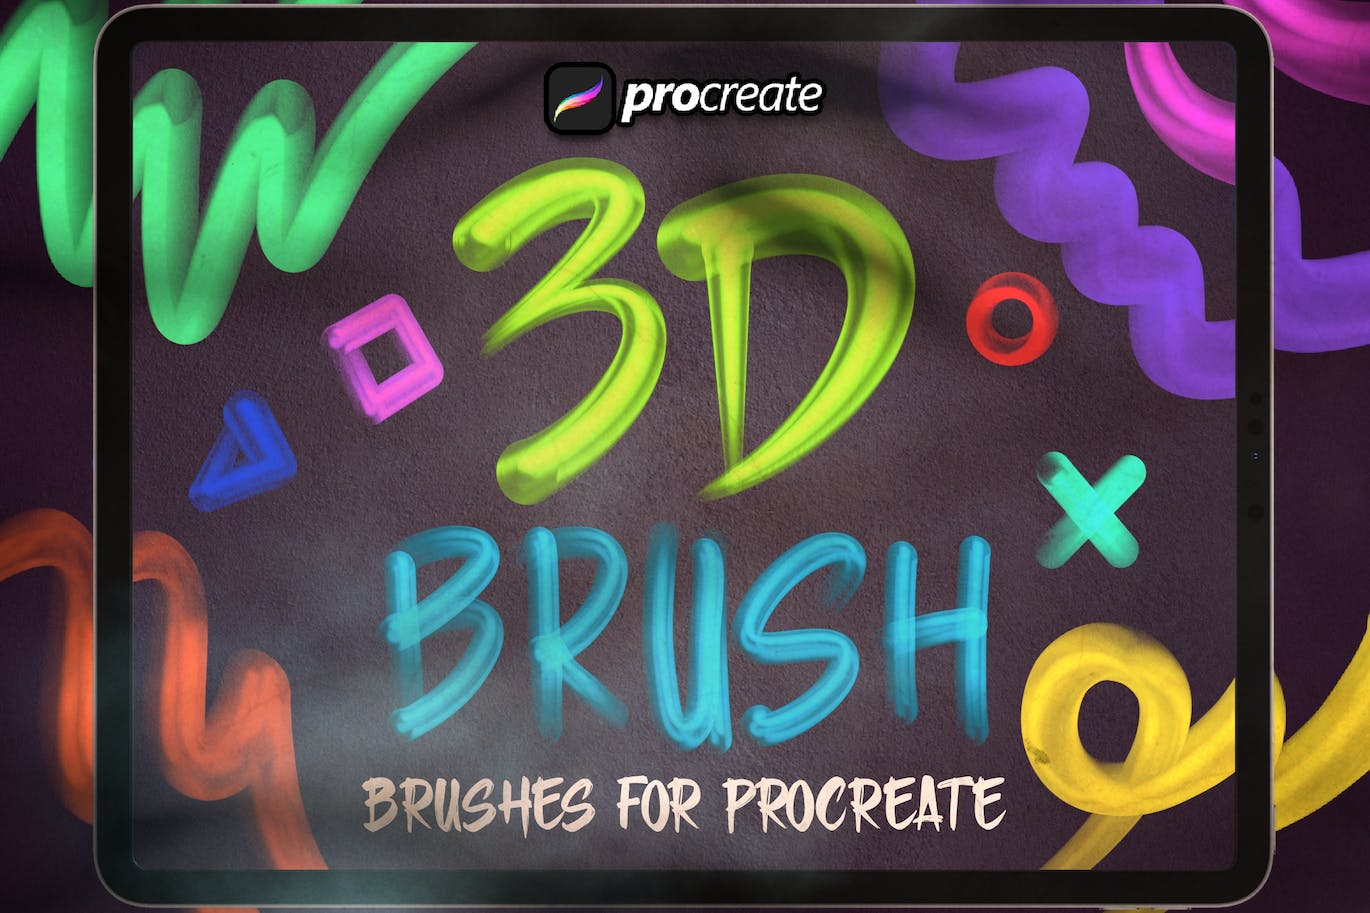 Procreate 3D笔刷画笔素材包 Procreate 3D Brush Pack 笔刷资源 第1张